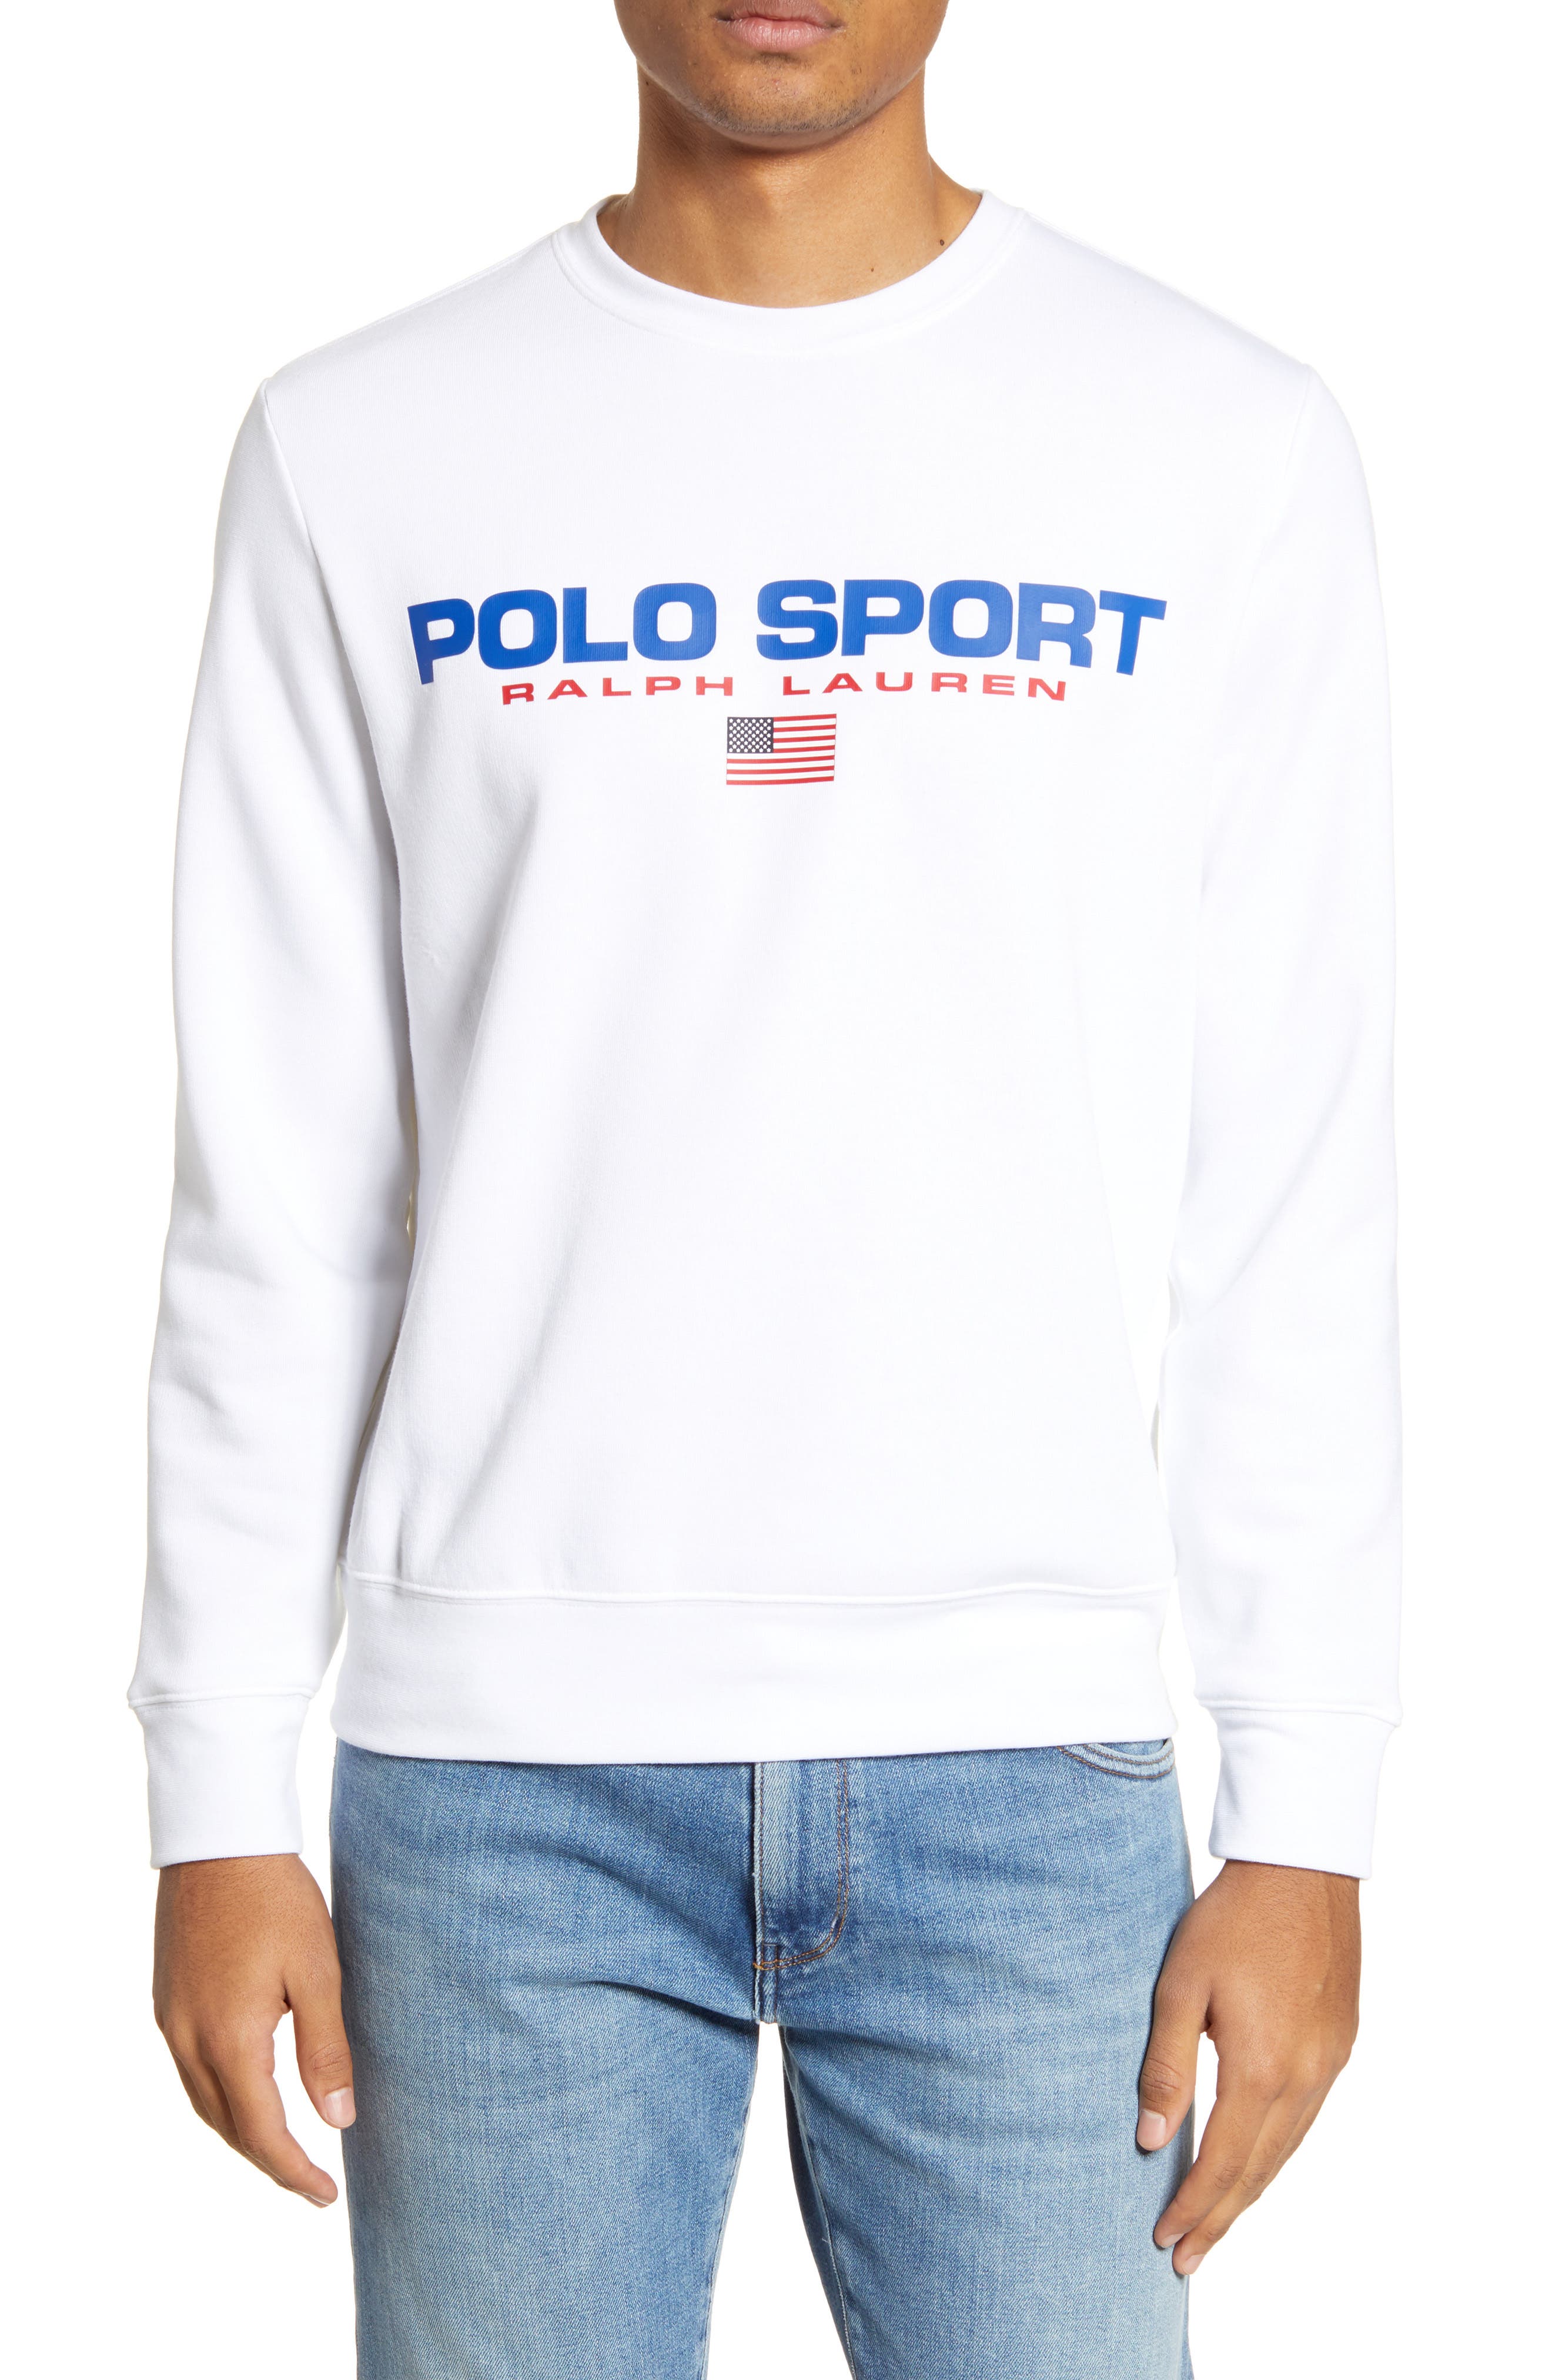 ralph lauren polo sport sweater